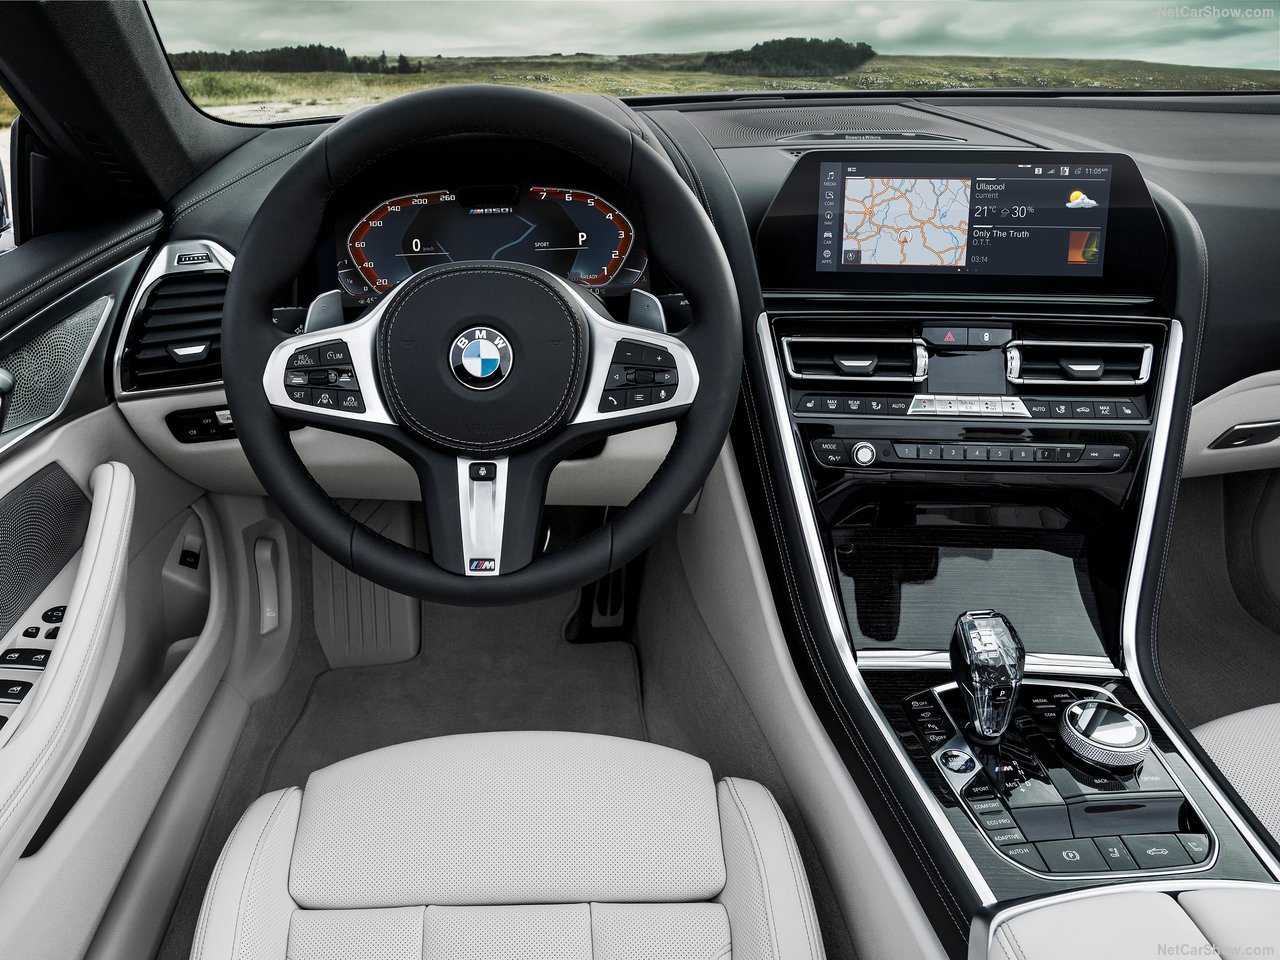 2019 BMW 8-Serisi Convertible tanıtıldı! İşte BMW 8-Serisi Convertible’ın özellikleri...